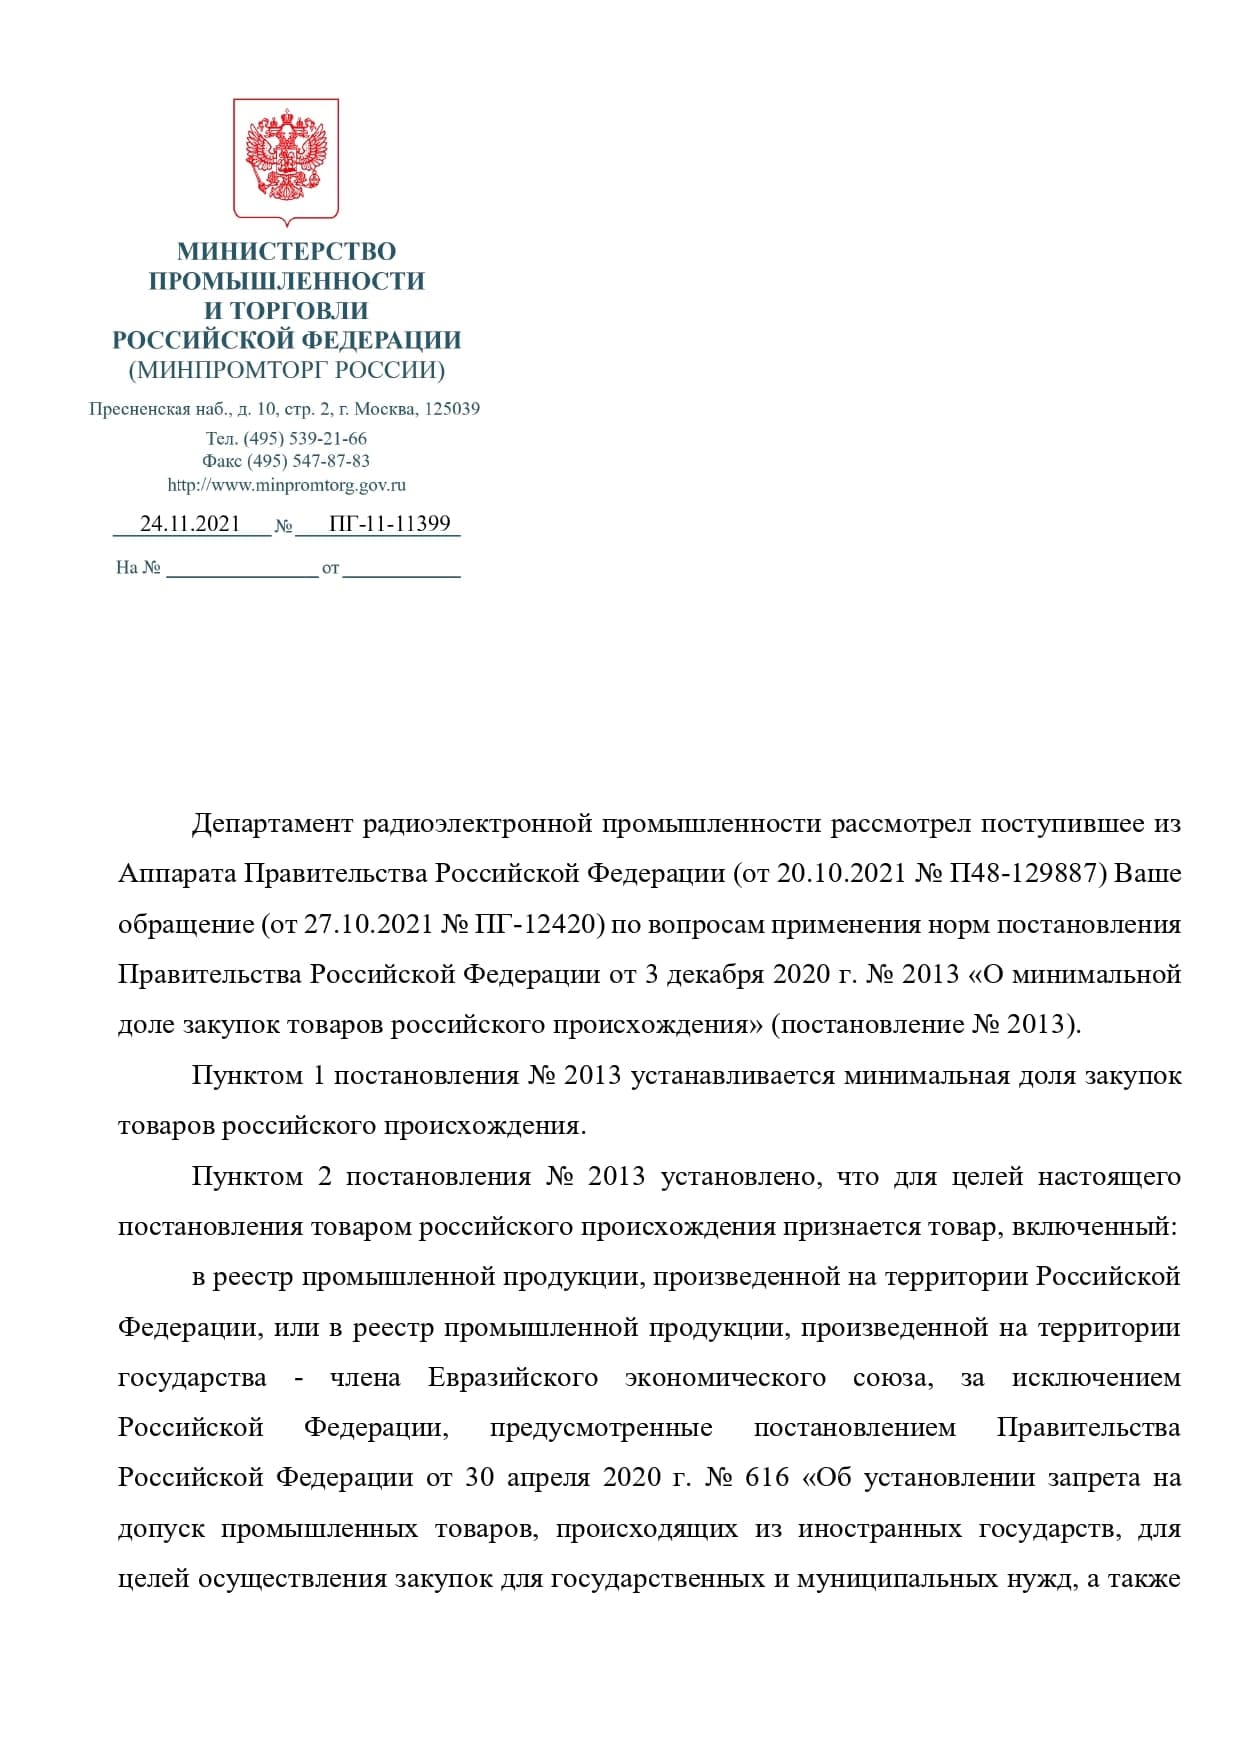 Постановление правительства 2013 о минимальной доле. О минимальной доле закупок товаров российского происхождения.